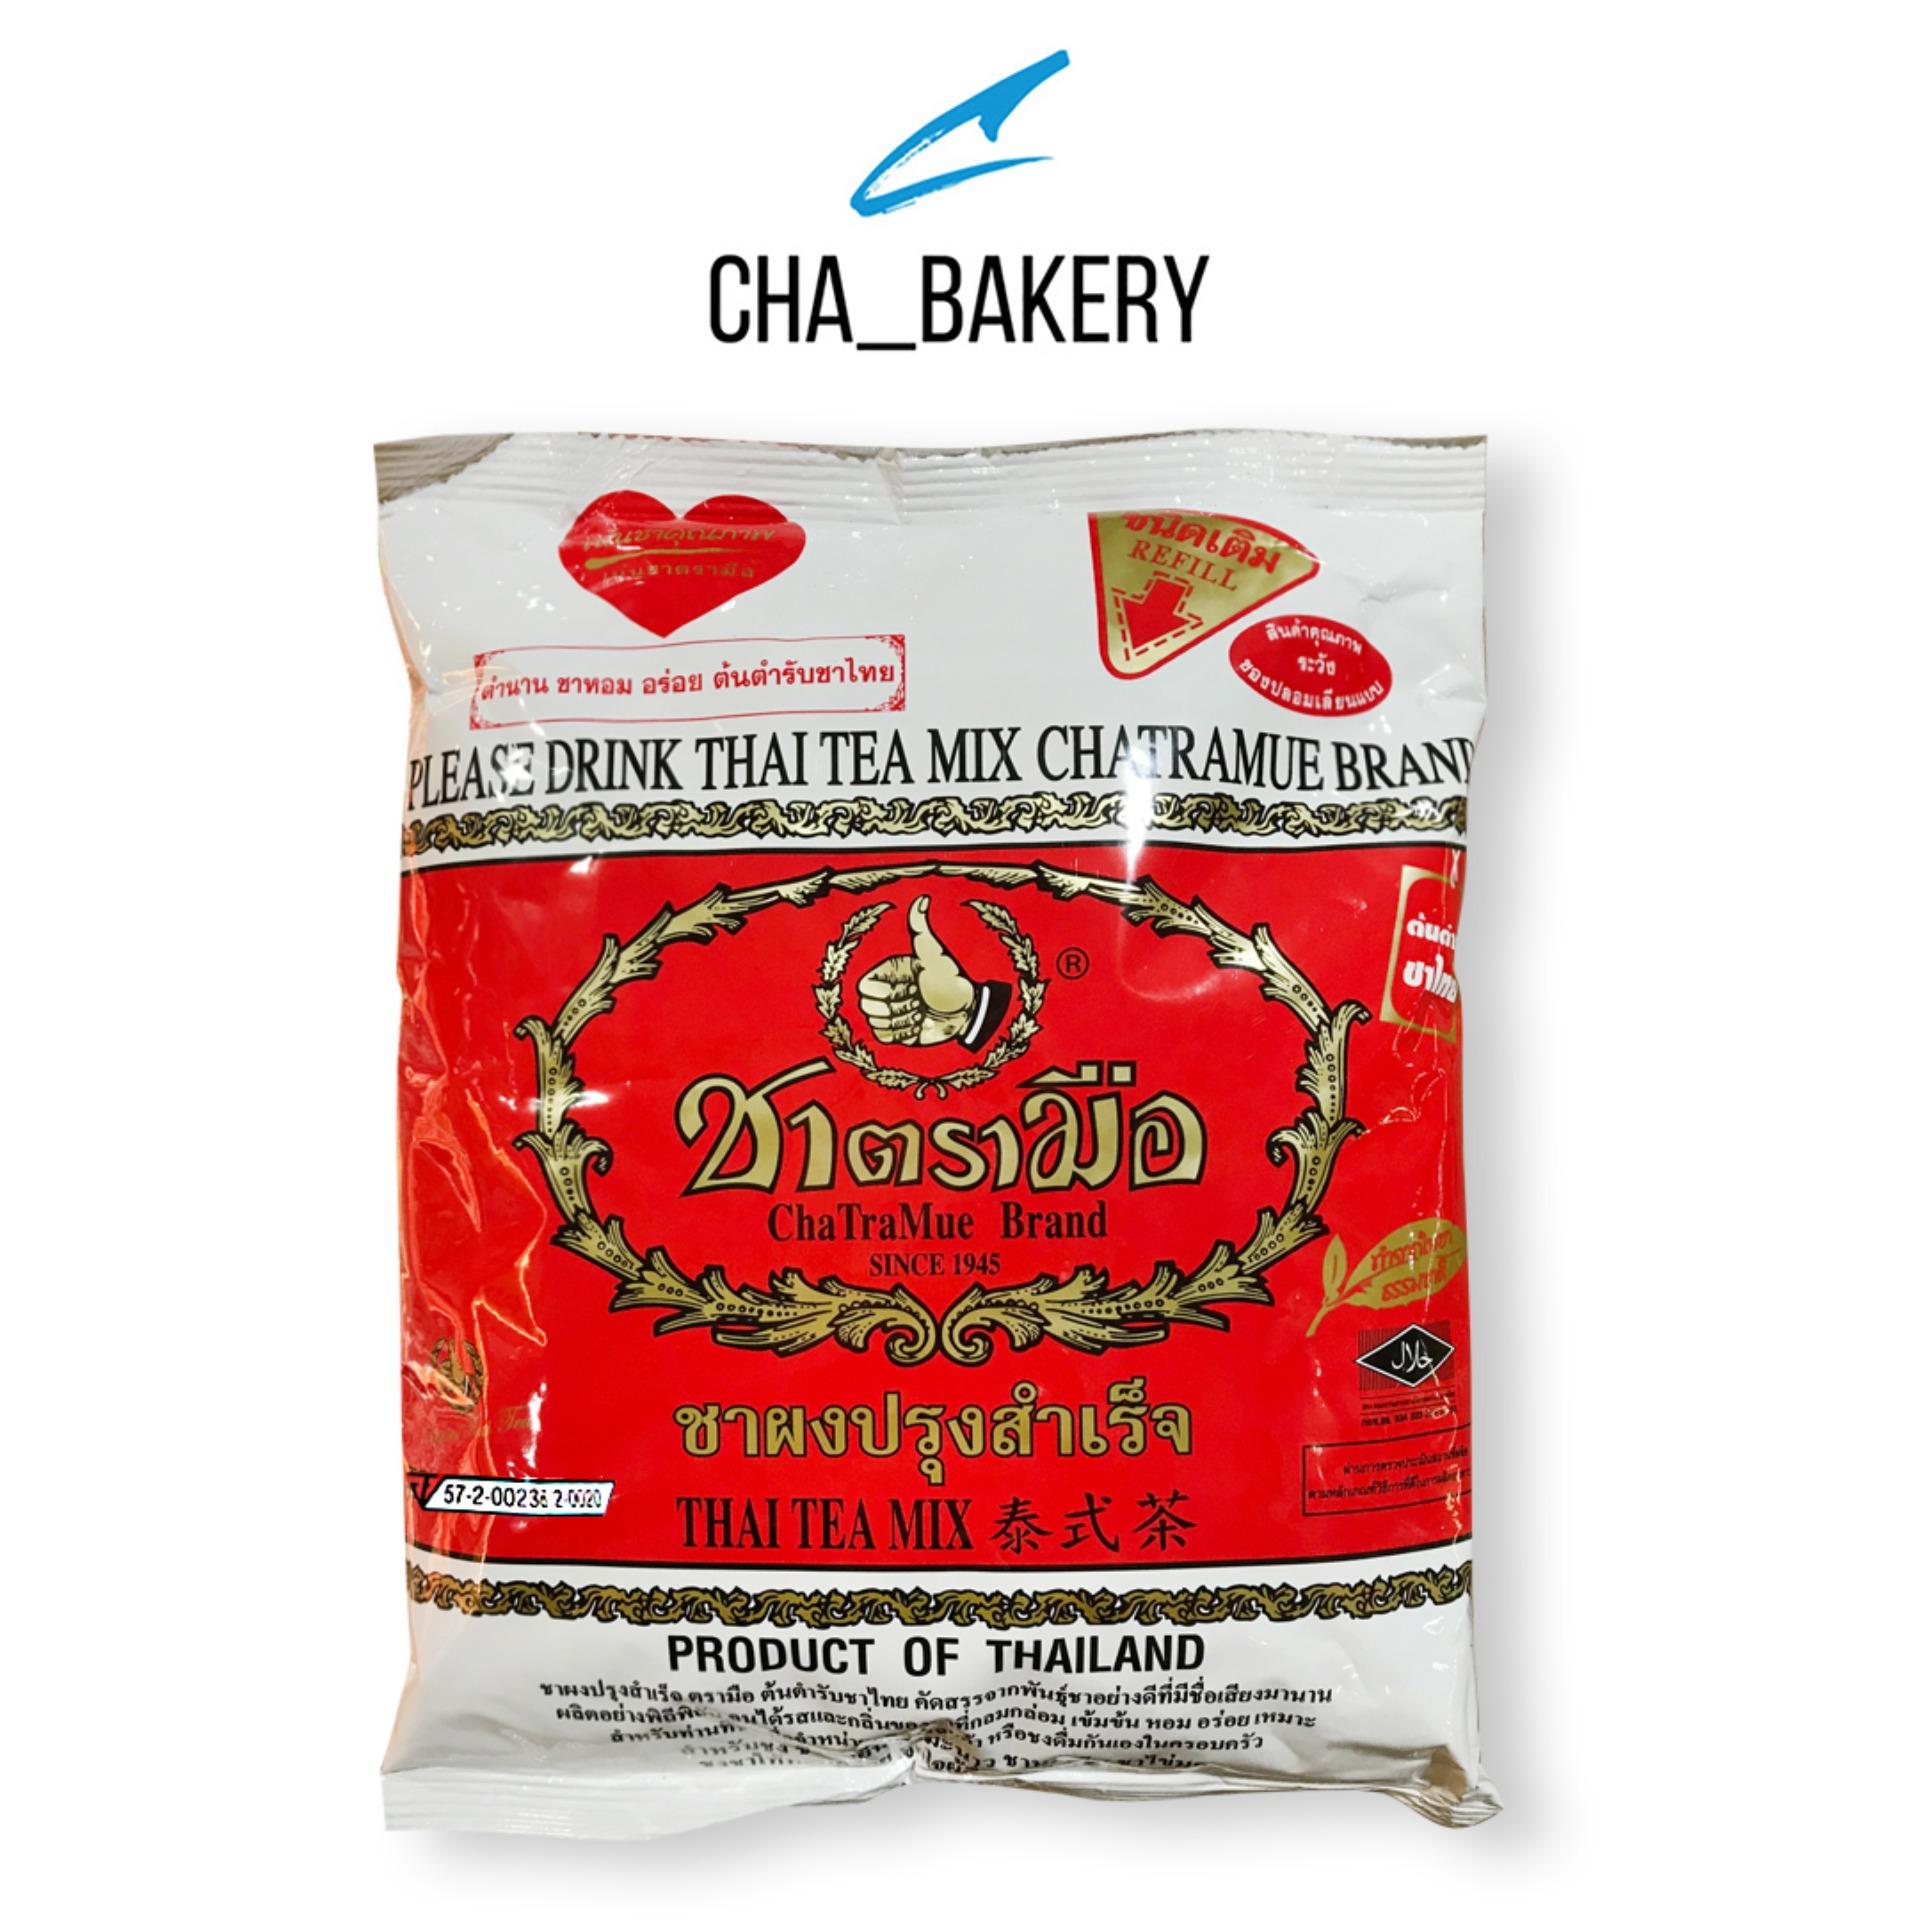 ชาตรามือ ชาผงปรุงสำเร็จ ChaTraMue ถุงแดง Thai Tea Mix 400 กรัม